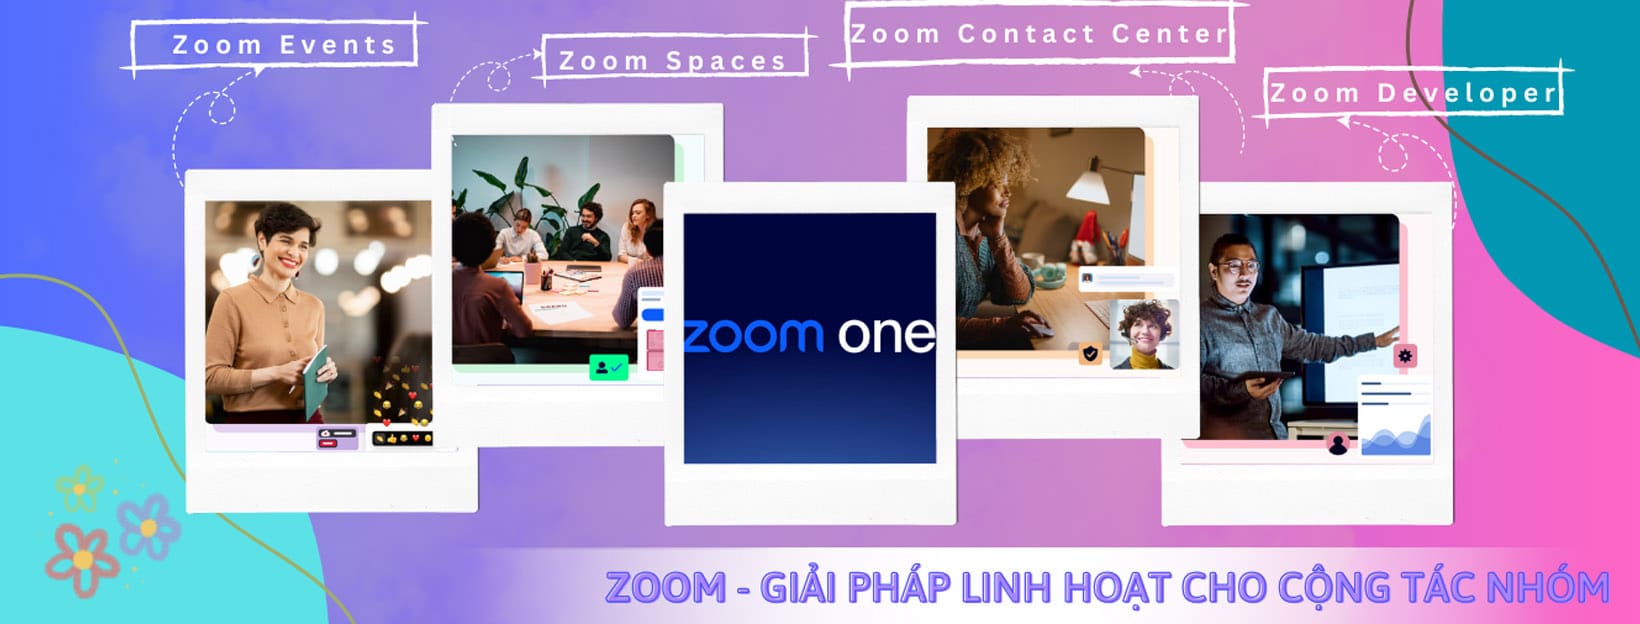 zoom - giải pháp linh hoạt cho công tác nhóm